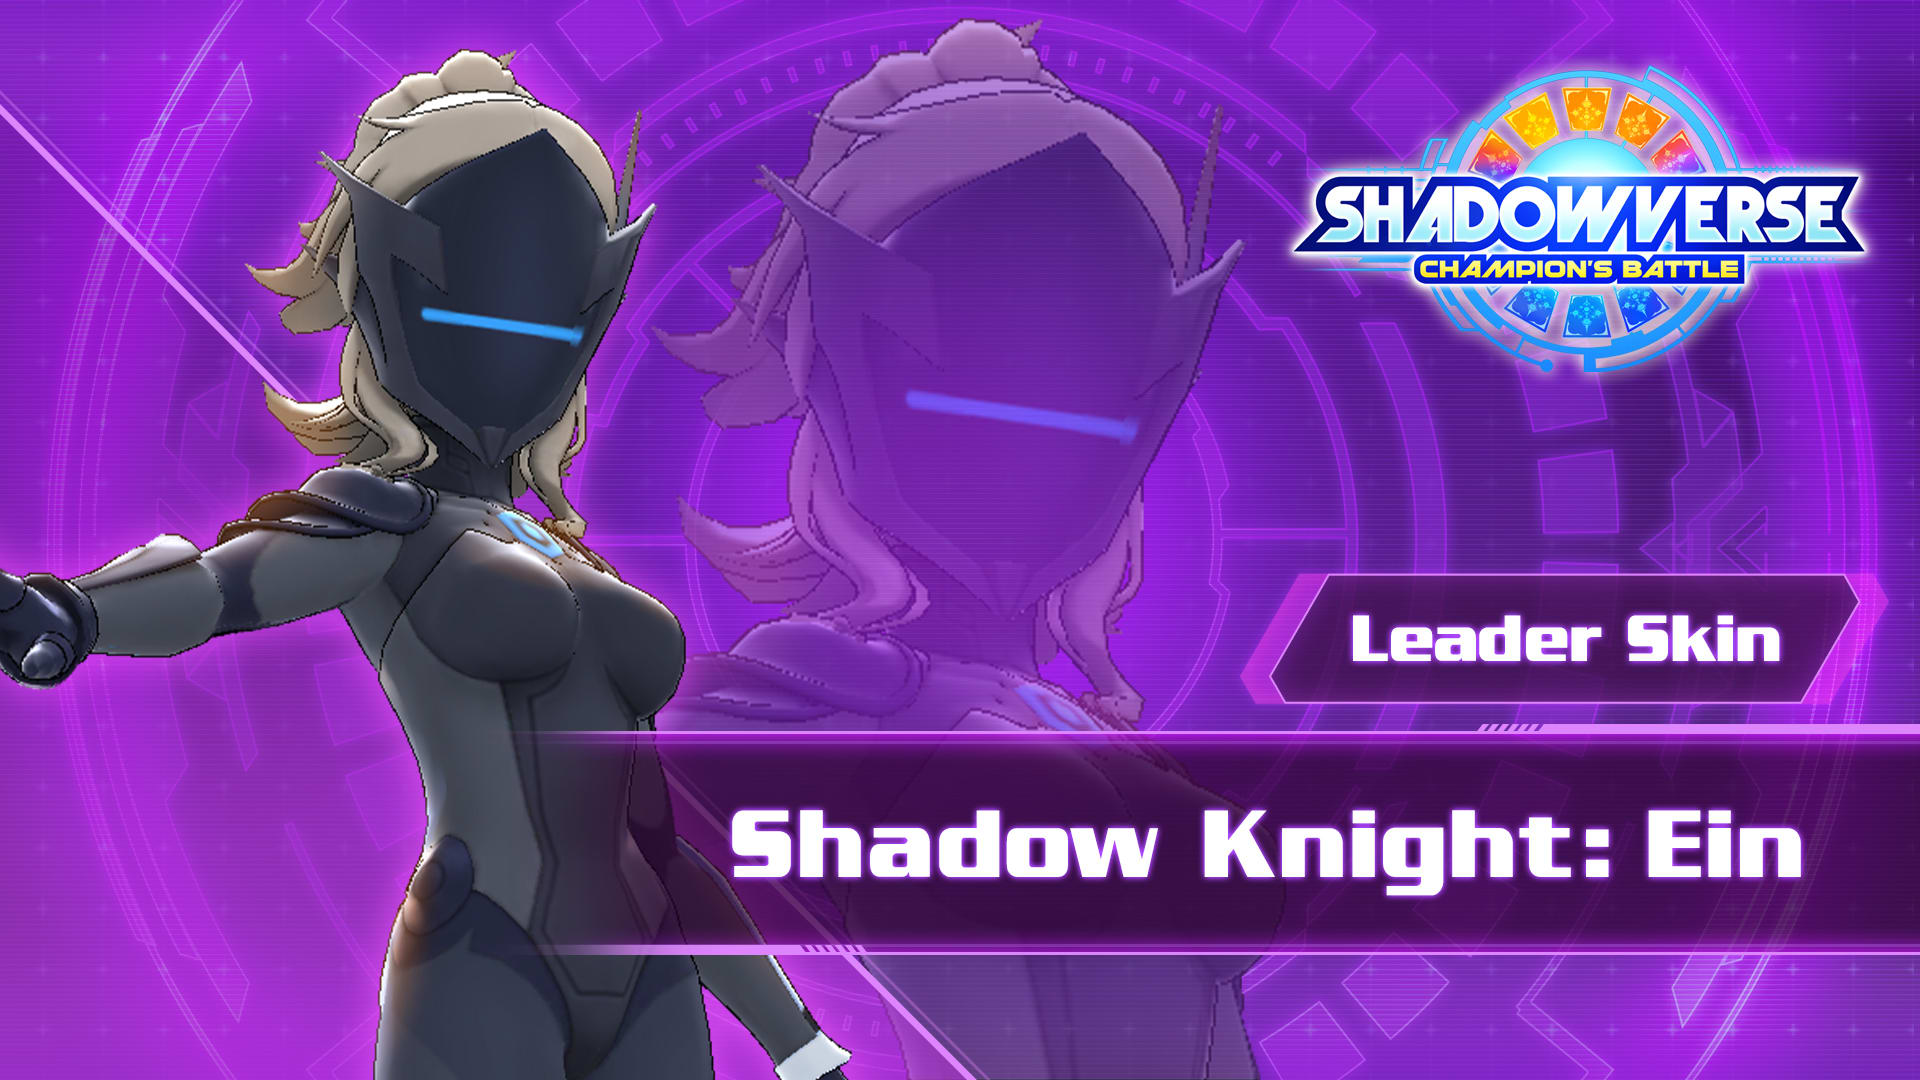 Leader Skin: "Shadow Knight: Ein"